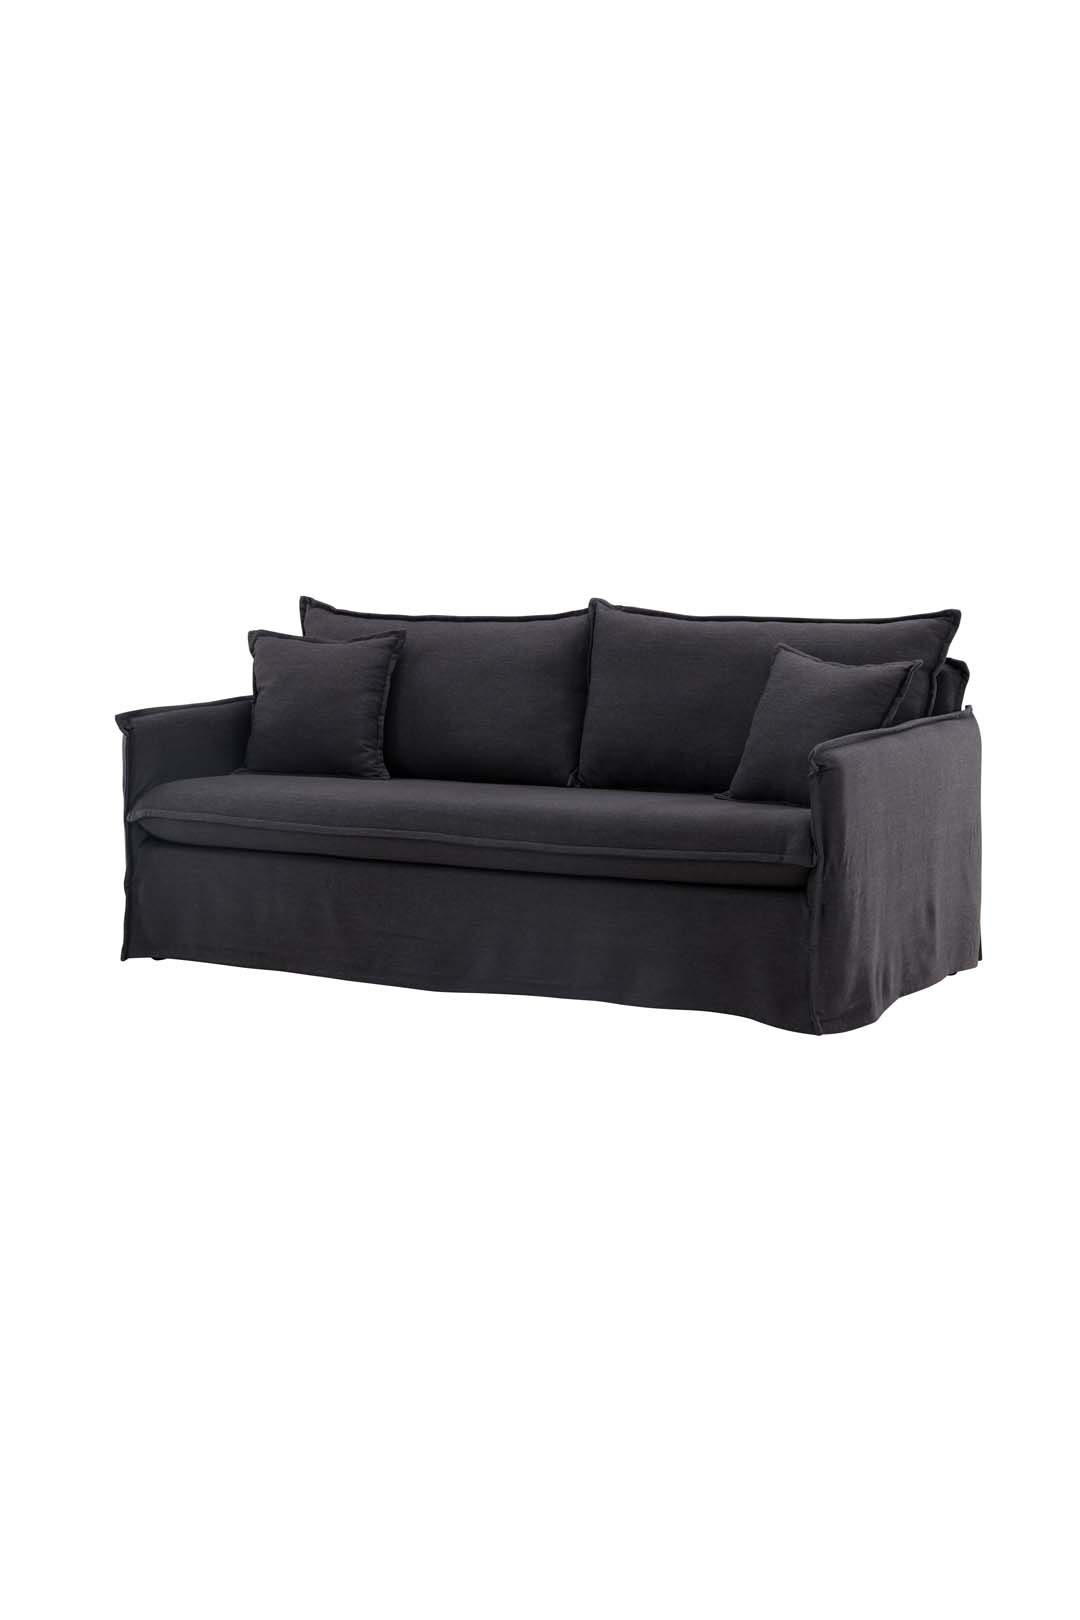 Sofa 3 schwarz. Personen Nova ebuy24 Sofa